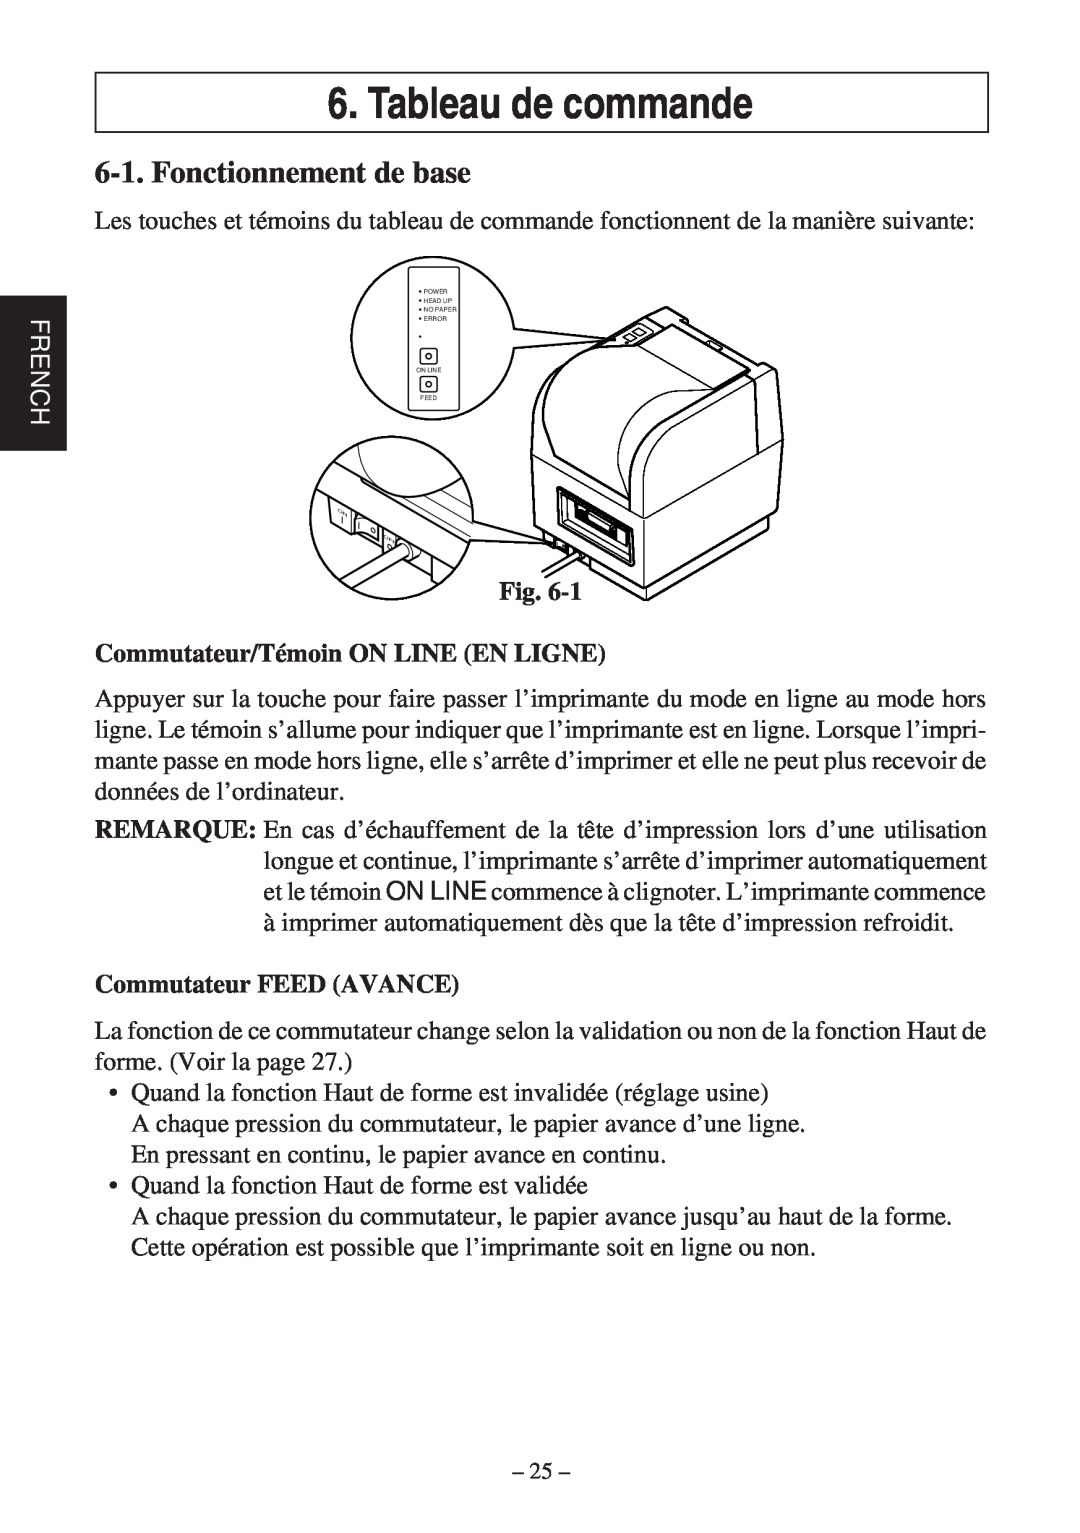 Star Micronics TSP400Z Series Tableau de commande, Fonctionnement de base, French, Commutateur/Témoin ON LINE EN LIGNE 